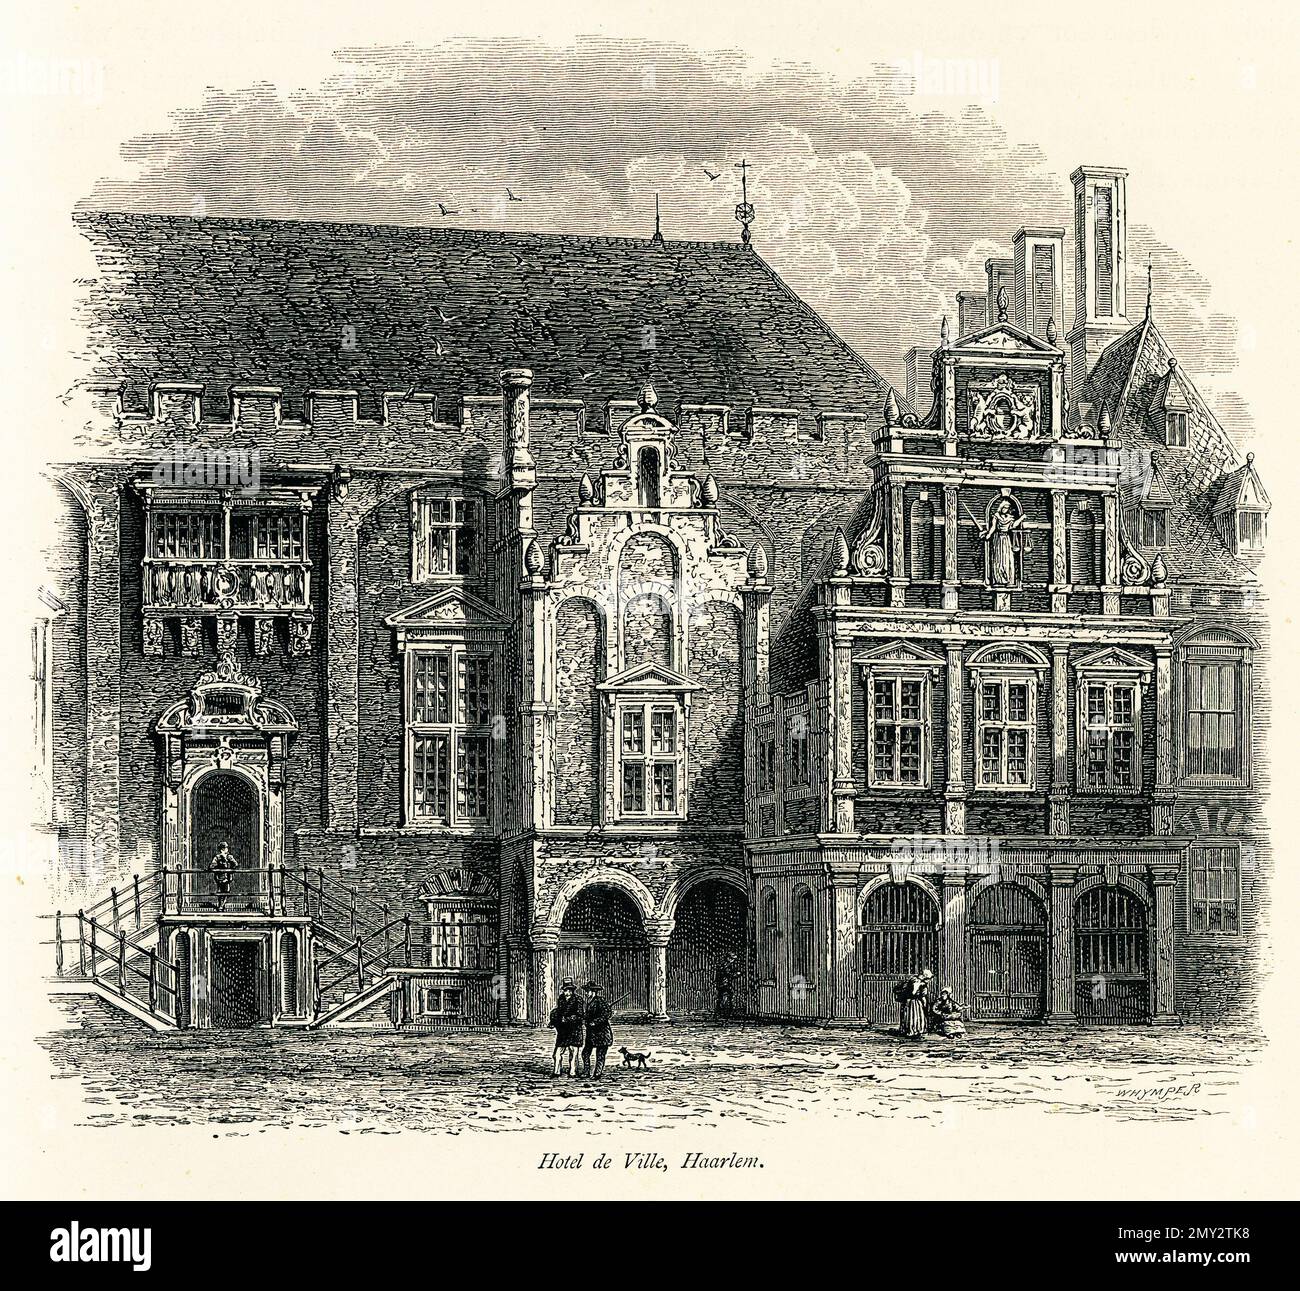 Antica incisione del municipio di Haarlem, Paesi Bassi. Illustrazione pubblicata in picturesque Europe, Vol. V (Cassell & Company, Limited: Lond Foto Stock